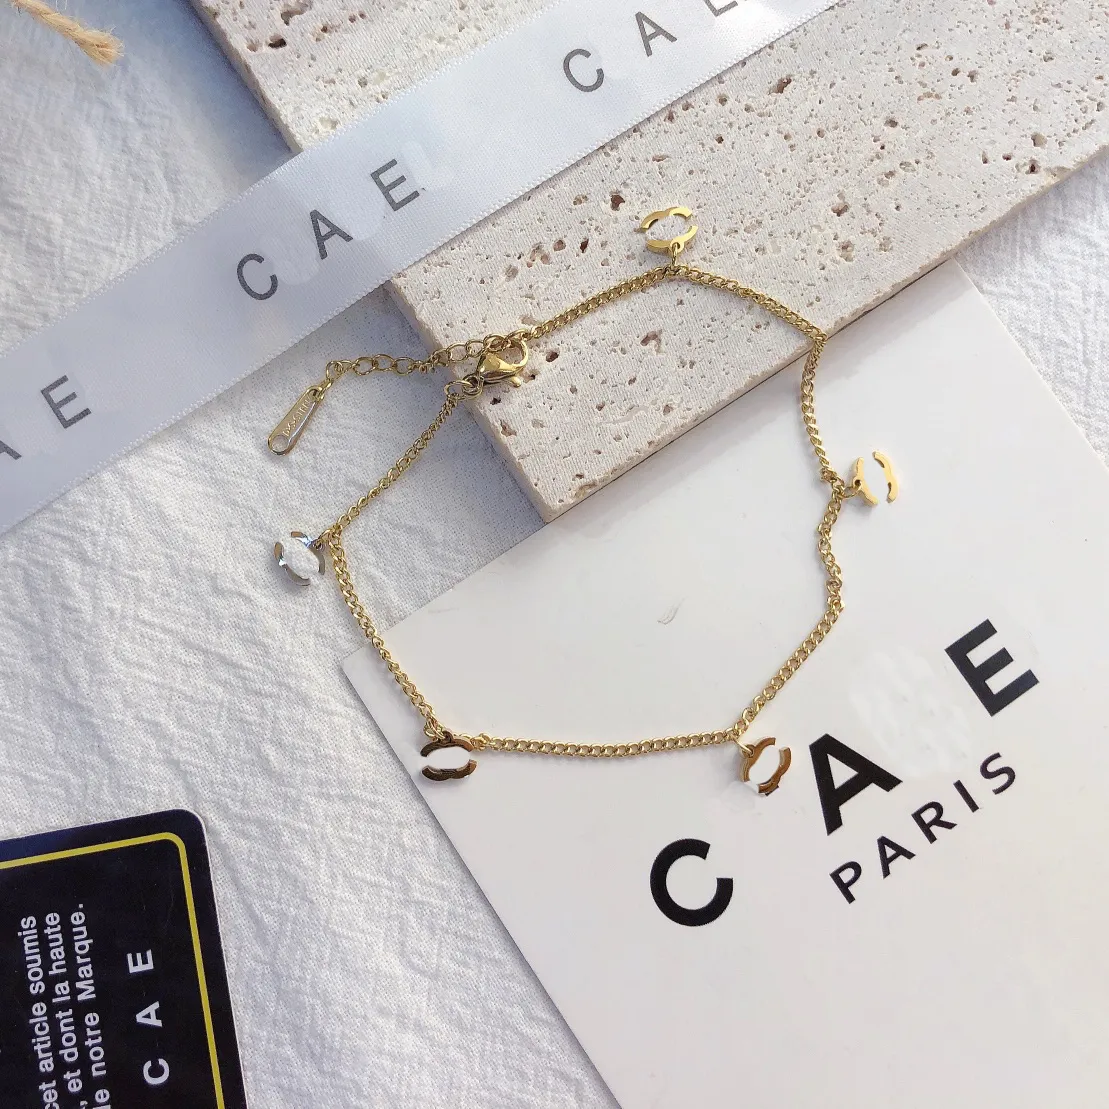 خلخال ذهبي مصمم للنساء تصميم جديد مع علامة تجارية للمجوهرات هدية مثالية لمزاجه وأسلوب المرأة الواعية